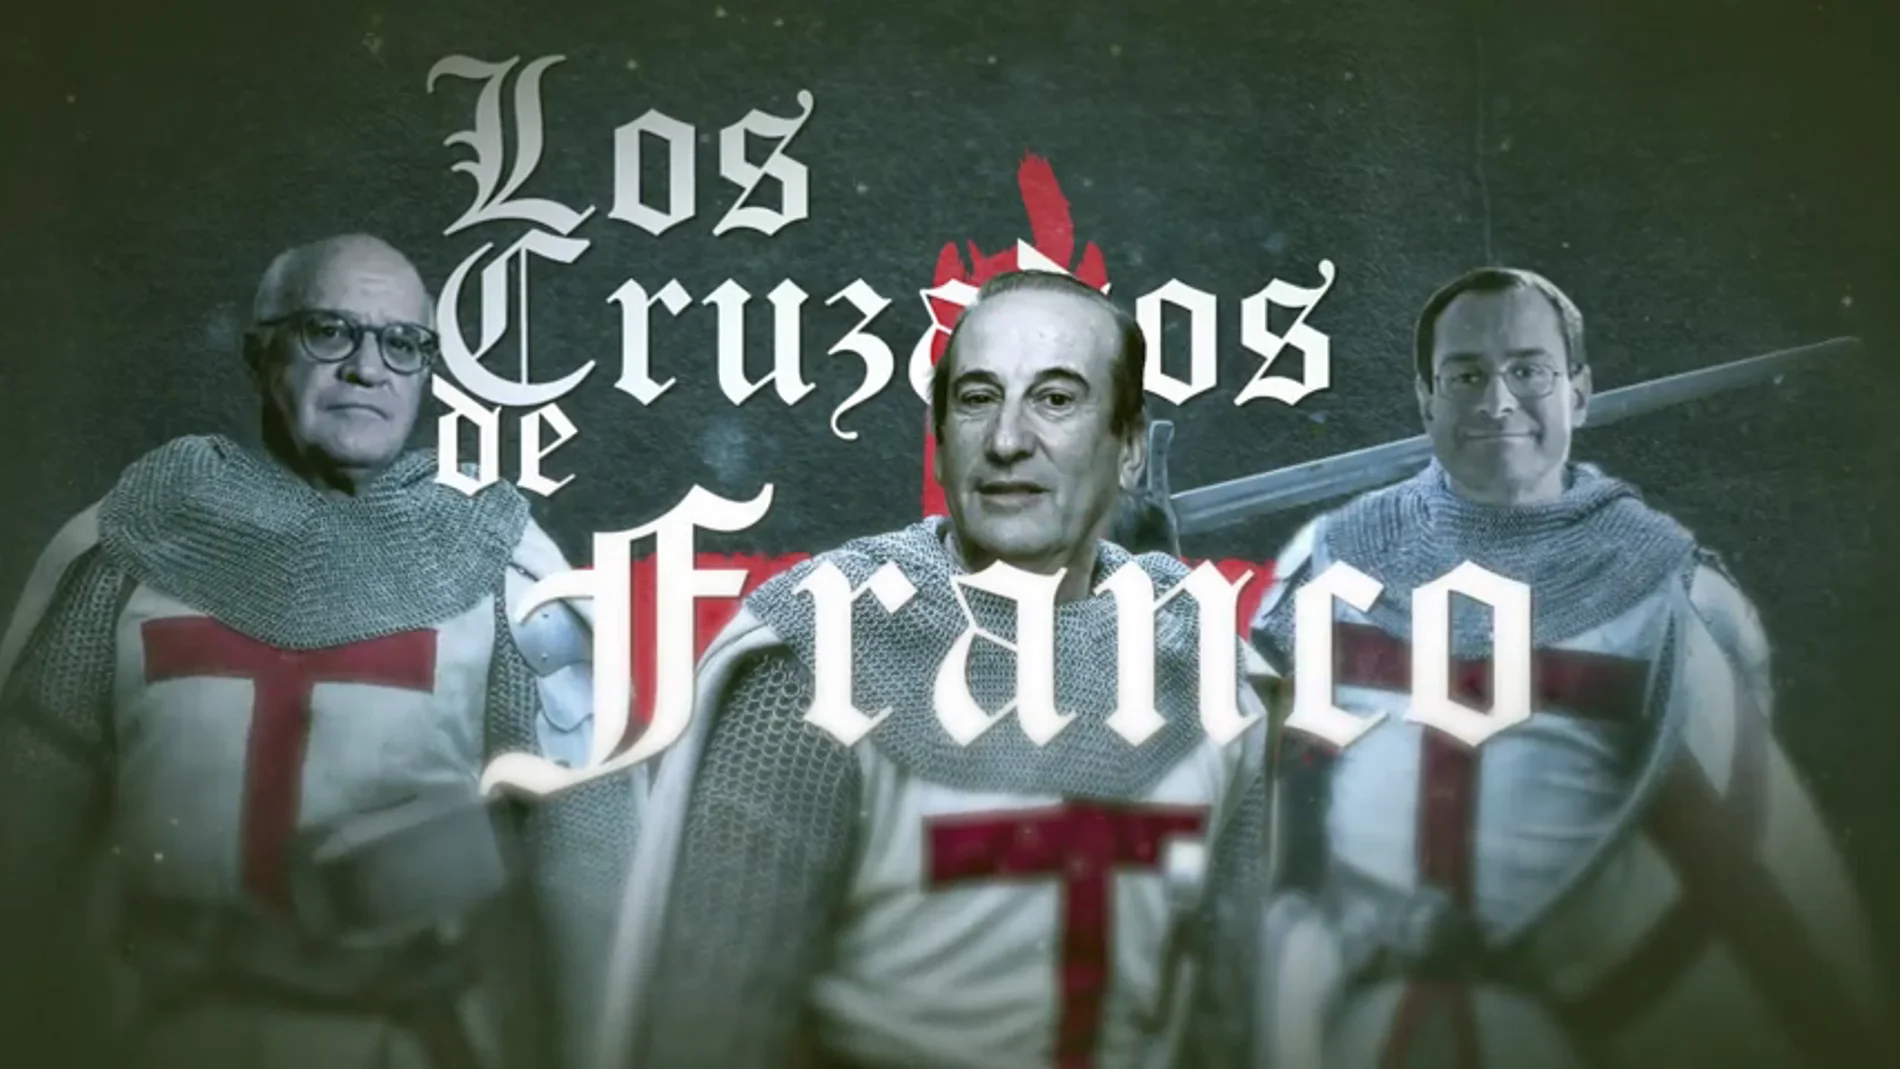 Historia de 'los últimos cruzados de Franco': así intentaron evitar la exhumación del dictador del Valle de los Caídos